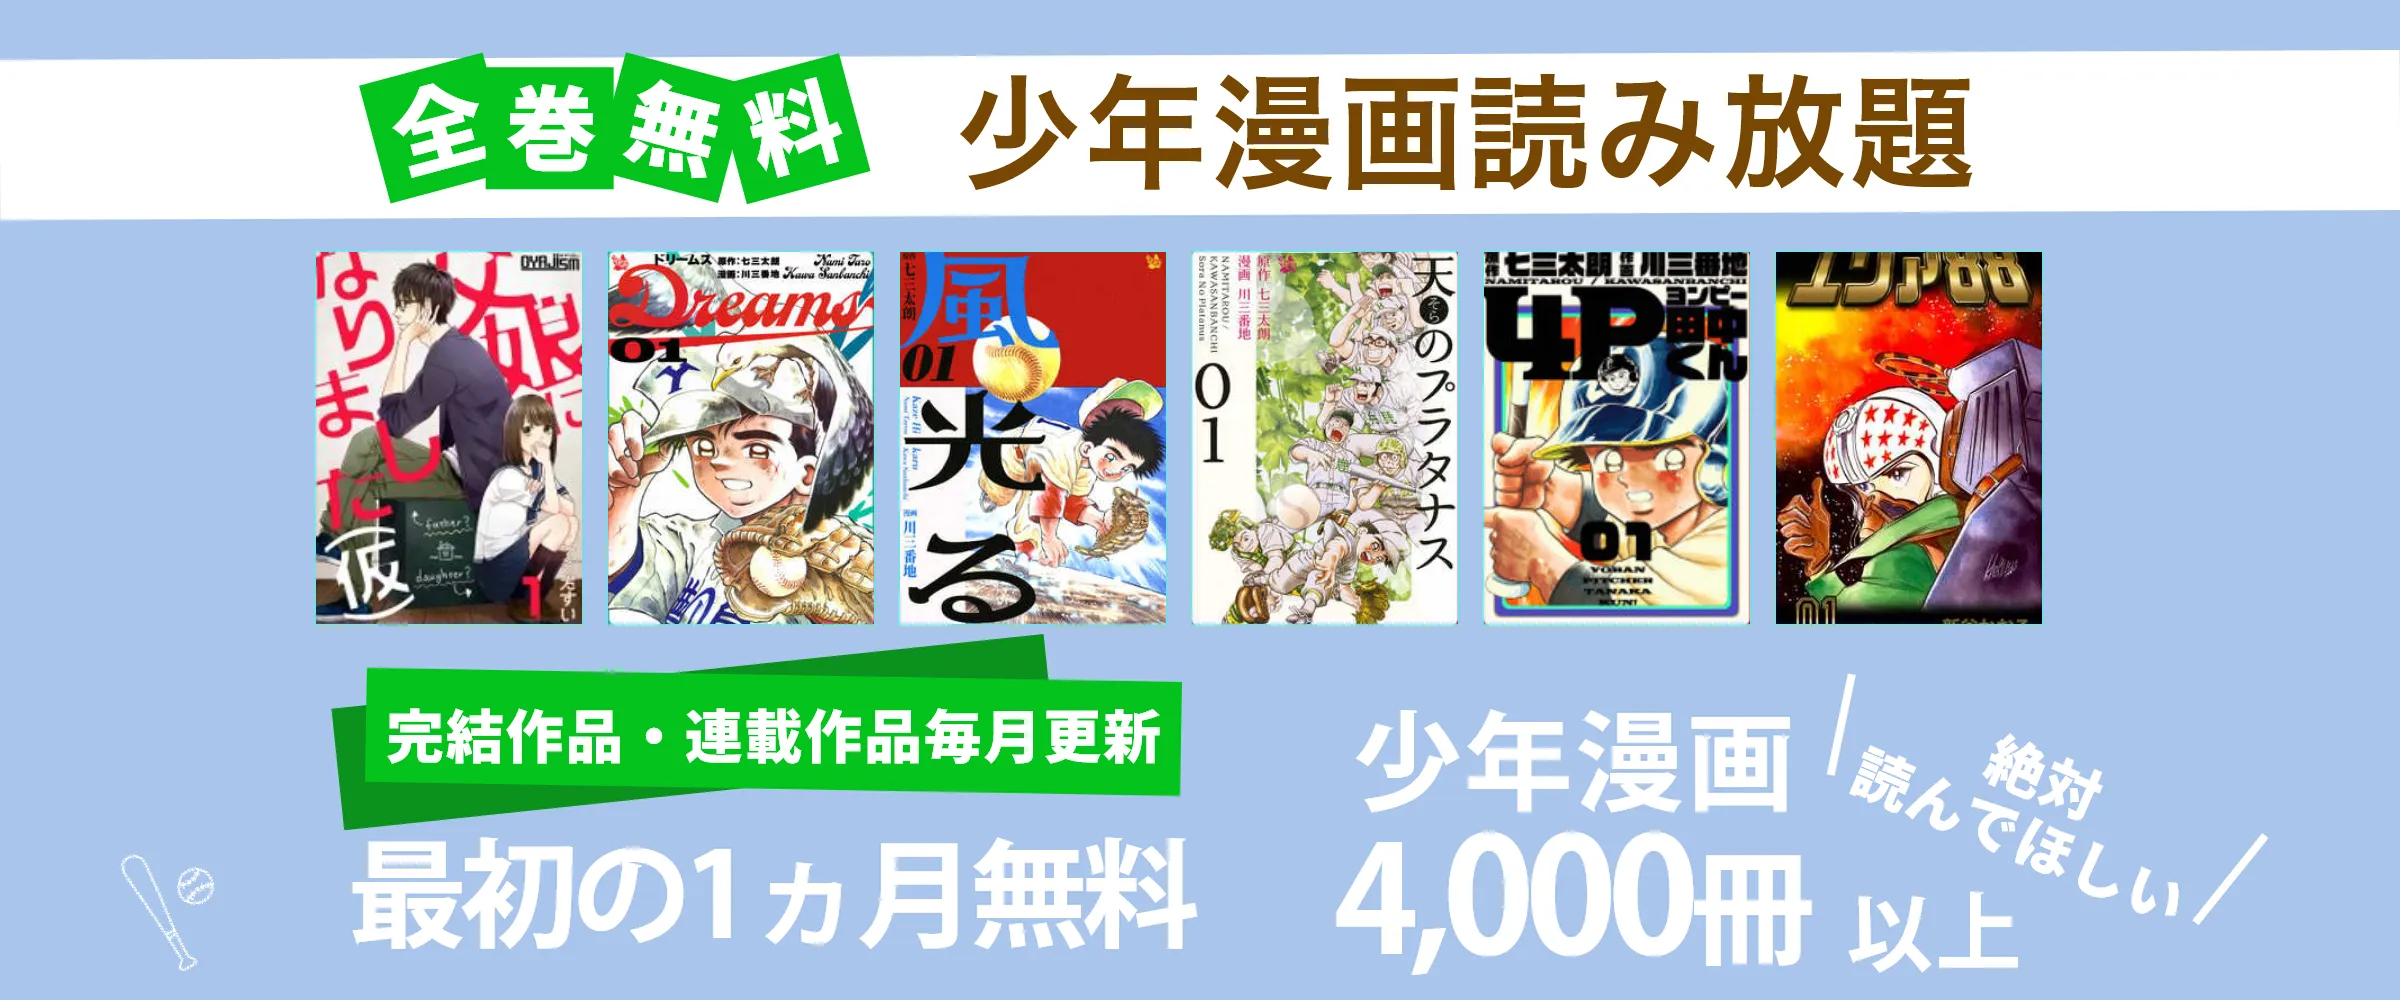 たった550円で少年漫画4,000冊以上読み放題。最初の1ヵ月無料。